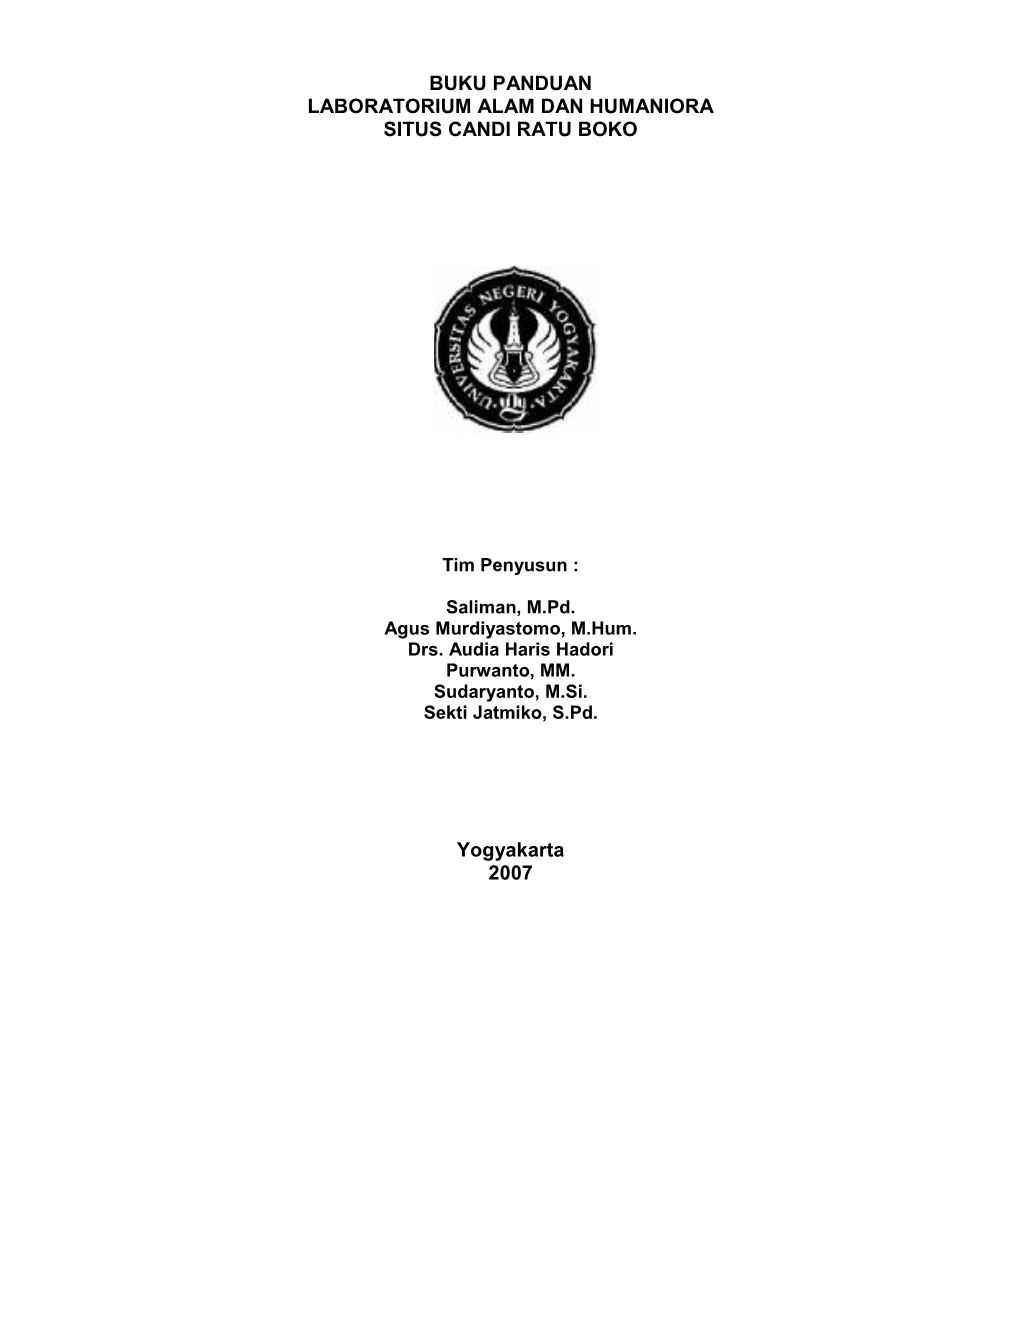 Buku Panduan Laboratorium Alam Dan Humaniora Situs Candi Ratu Boko